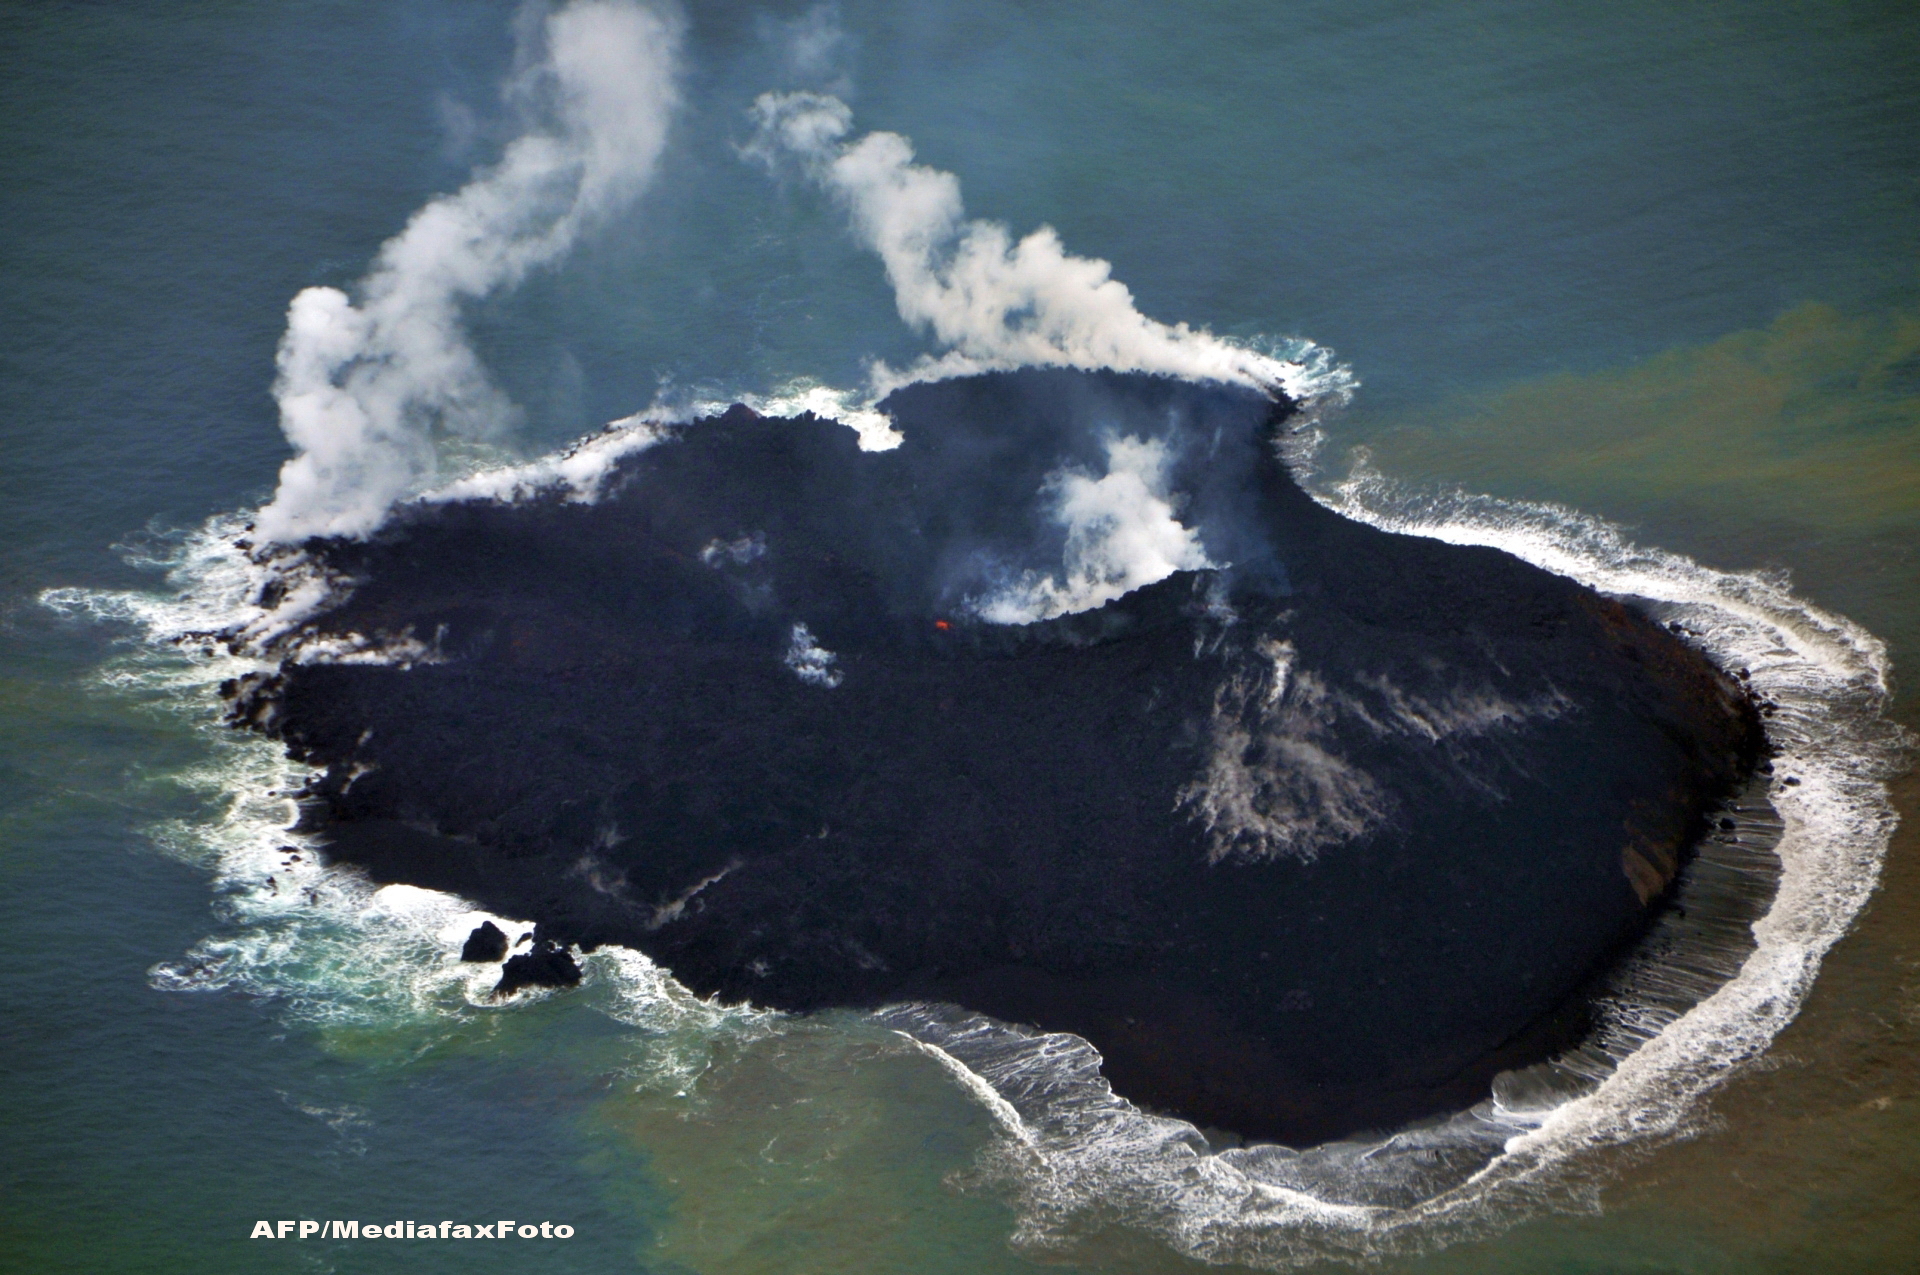 Alerta de tsunami in Japonia. Lava unei insule vulcanice, aflata in eruptie, ar putea provoca o tragedie. GALERIE FOTO - Imaginea 4